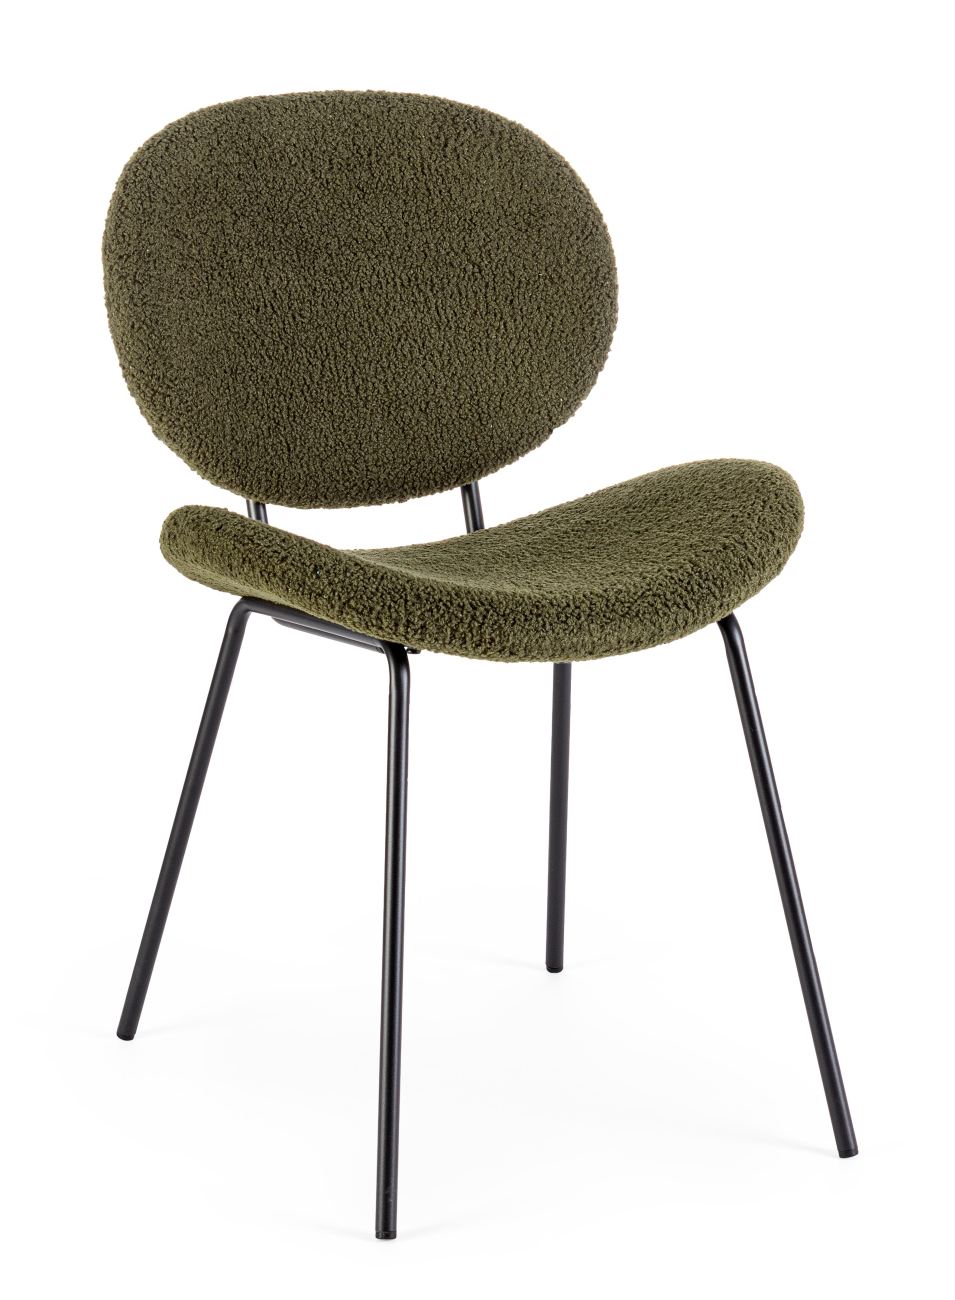 Der Esszimmerstuhl Maddie überzeugt mit seinem modernen Stil. Gefertigt wurde er aus Boucle-Stoff, welcher einen dunkelgrünen Farbton besitzt. Das Gestell ist aus Metall und hat eine schwarze Farbe. Der Stuhl besitzt eine Sitzhöhe von 46 cm.